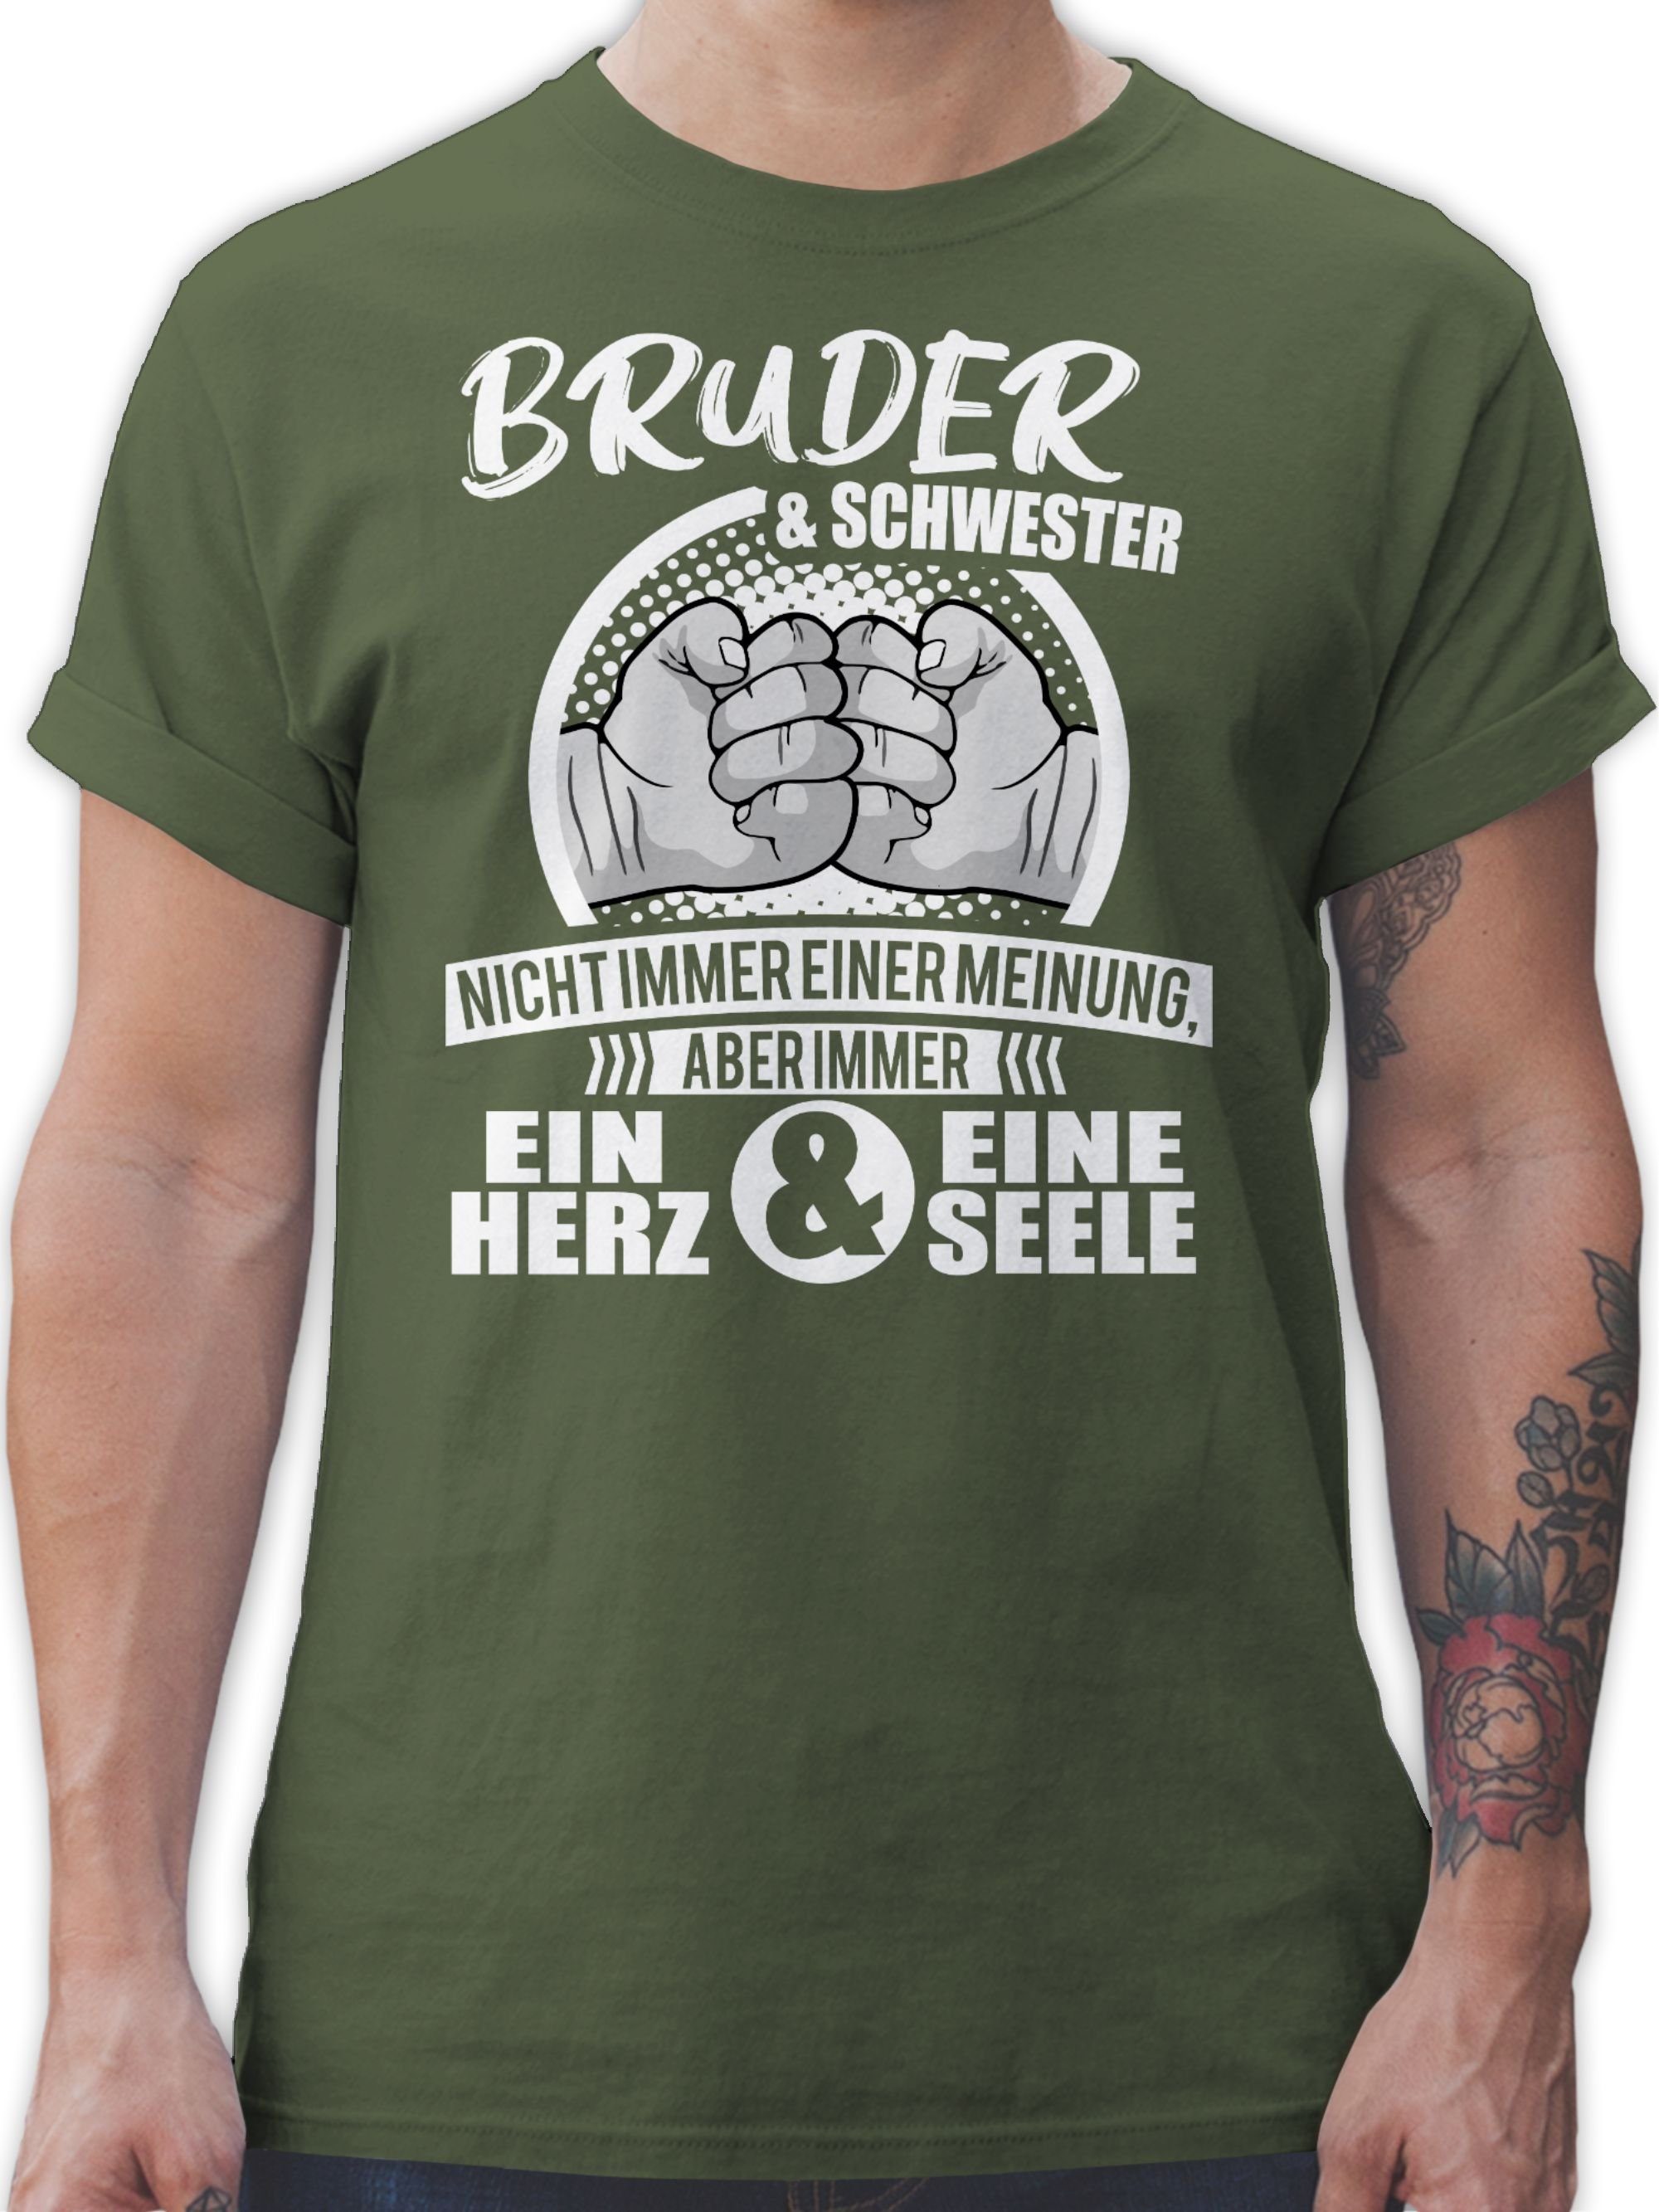 Familie 03 Grün Herz Immer & ein Seele & Schwester Shirtracer Bruder eine Army T-Shirt